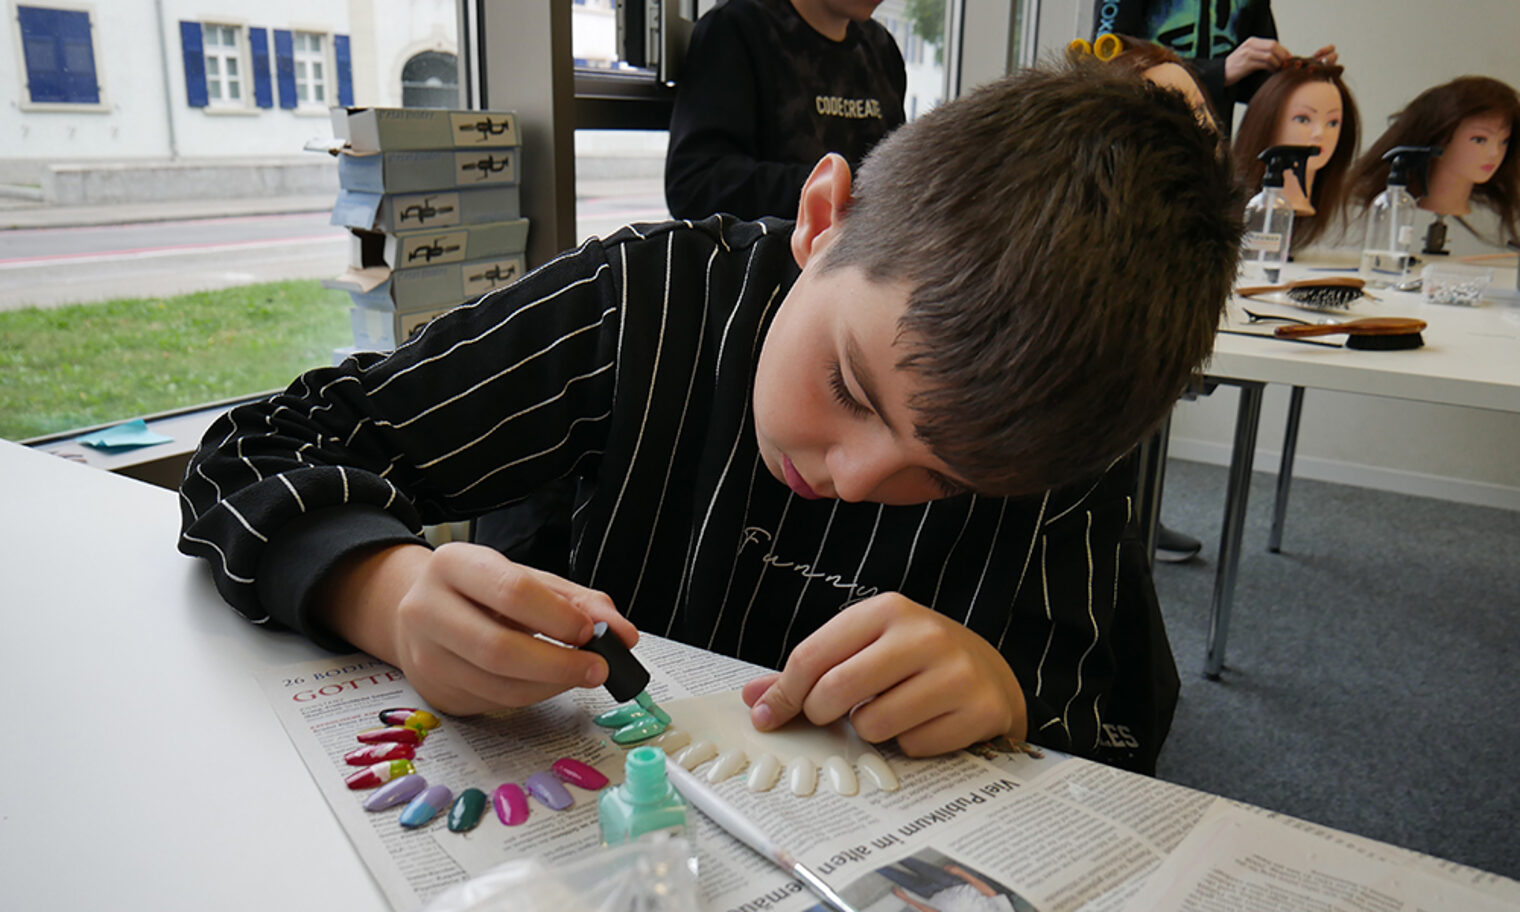 Schüler lackiert Kunststoff-Fingernägel im Rahmen der Berufsorientierung (Kosmetiker) an der Bildungsakademie Singen.